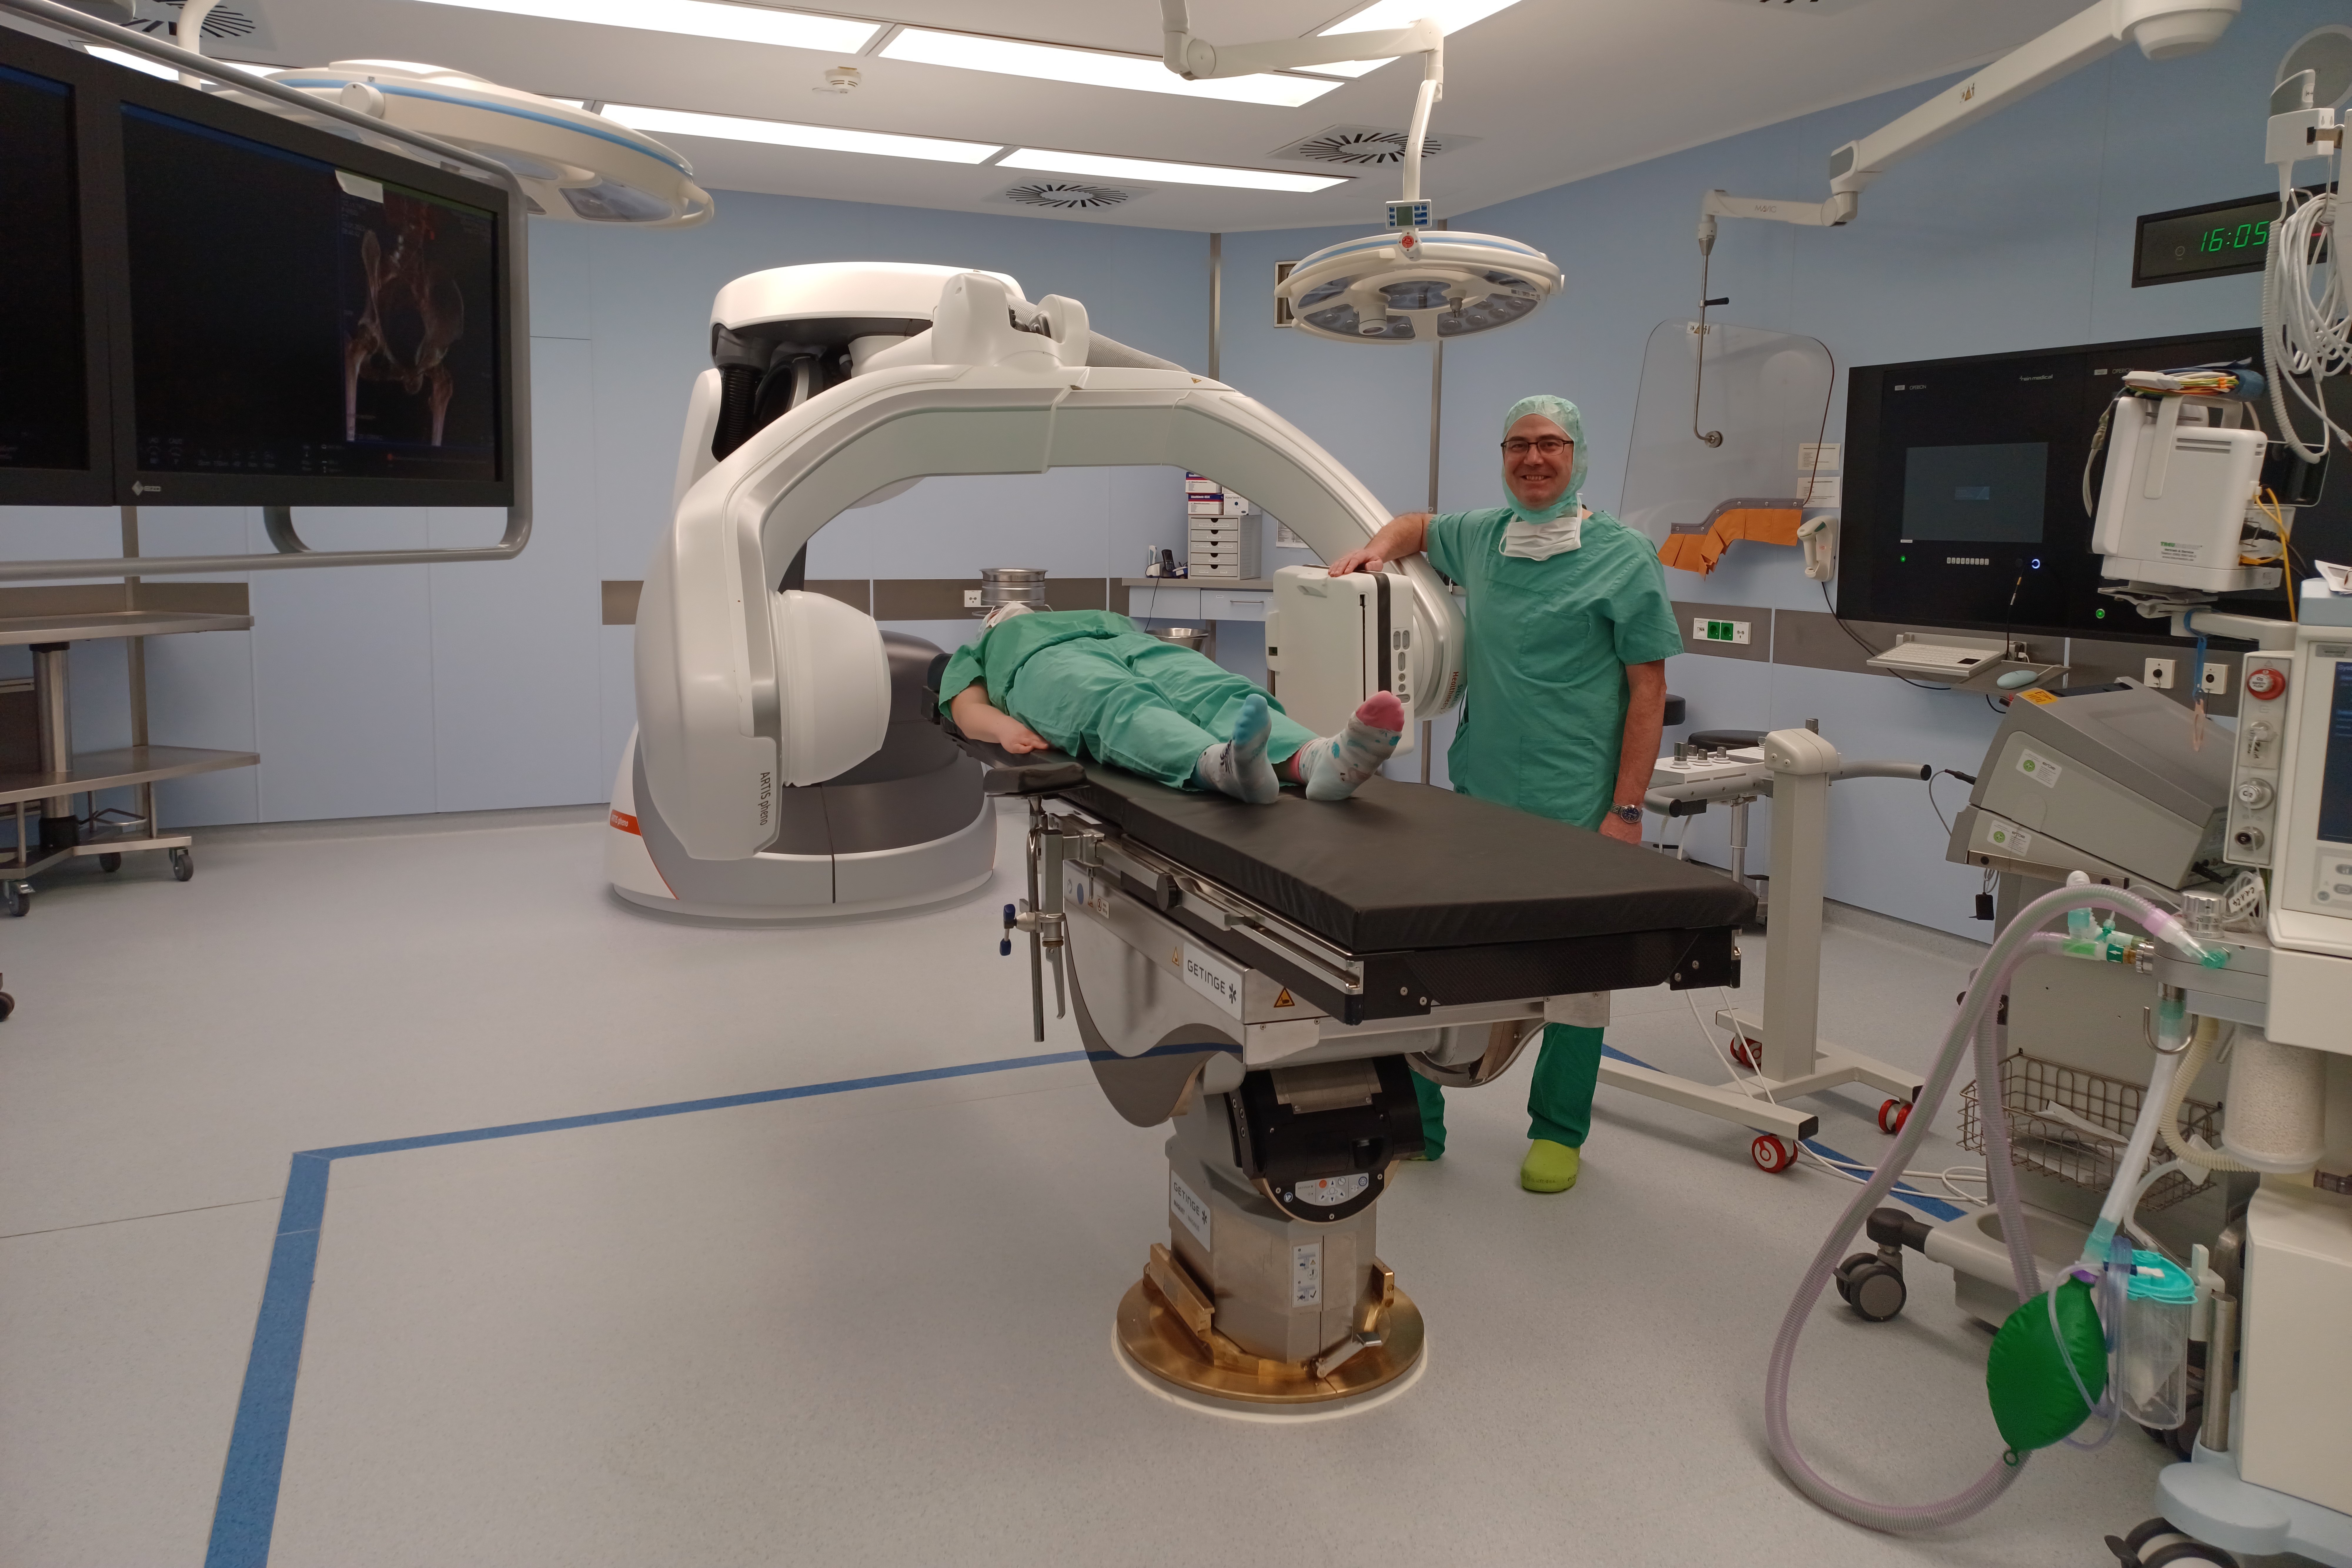 Chirurgischer Eingriff und Röntgenbild aus einem Guss: Dr. Baumann ist von den Vorteilen des Hybrid-Operationssaales in Weilheim überzeugt.